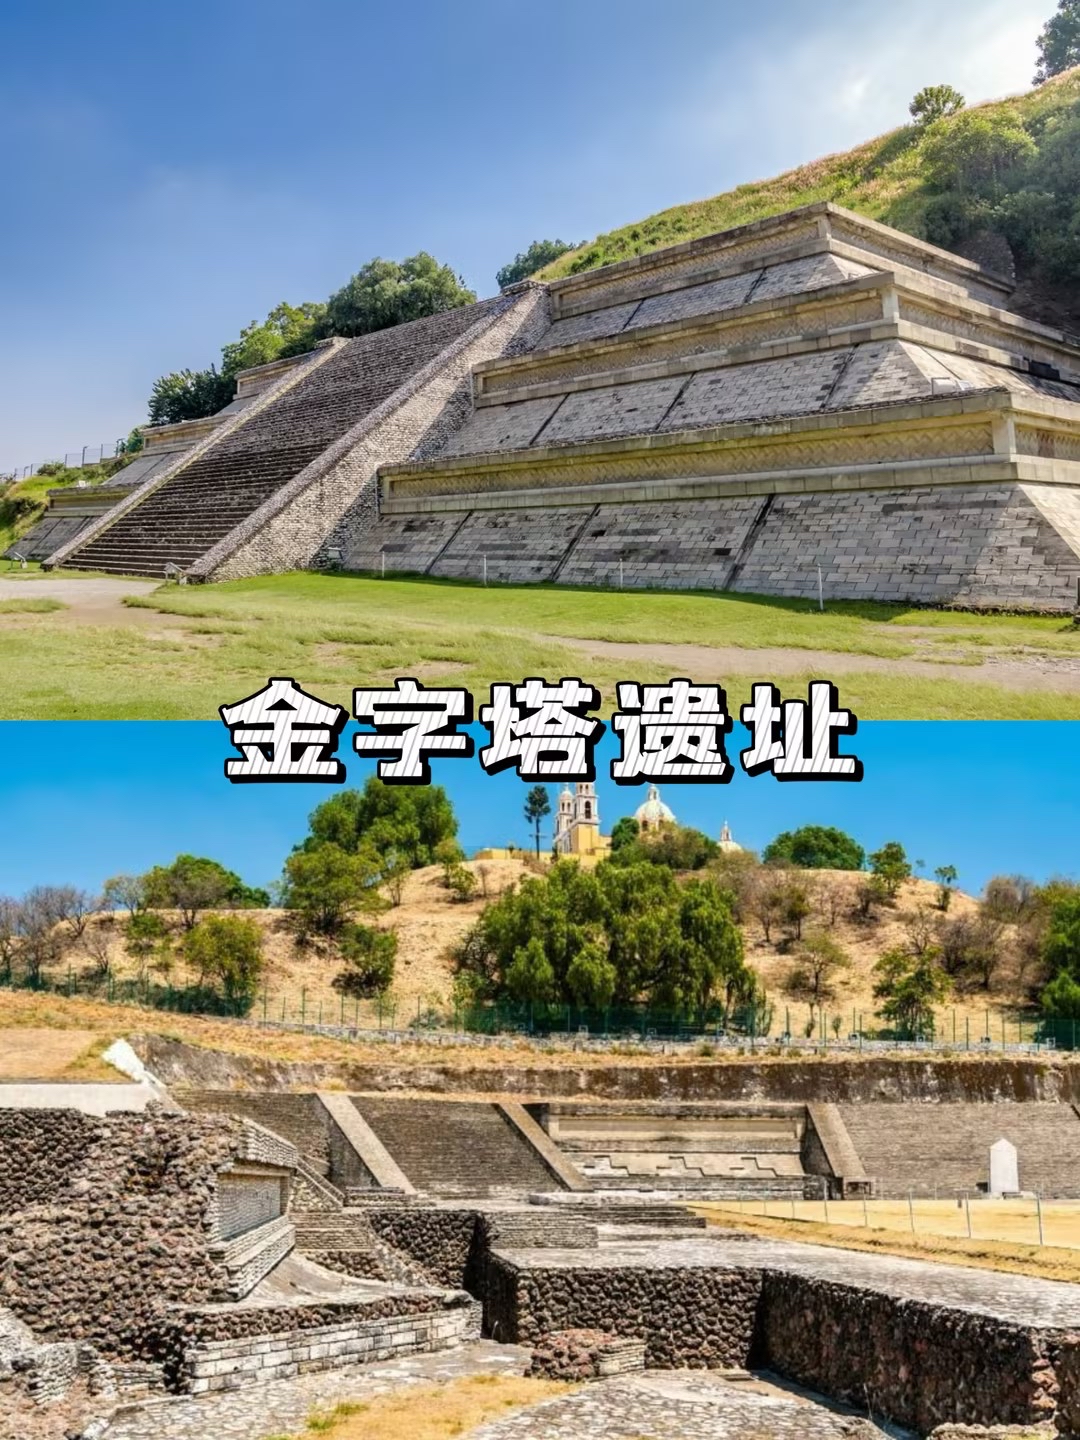 🇲🇽✨墨西哥古迹之旅！揭秘神秘玛雅文化🗿 🌴